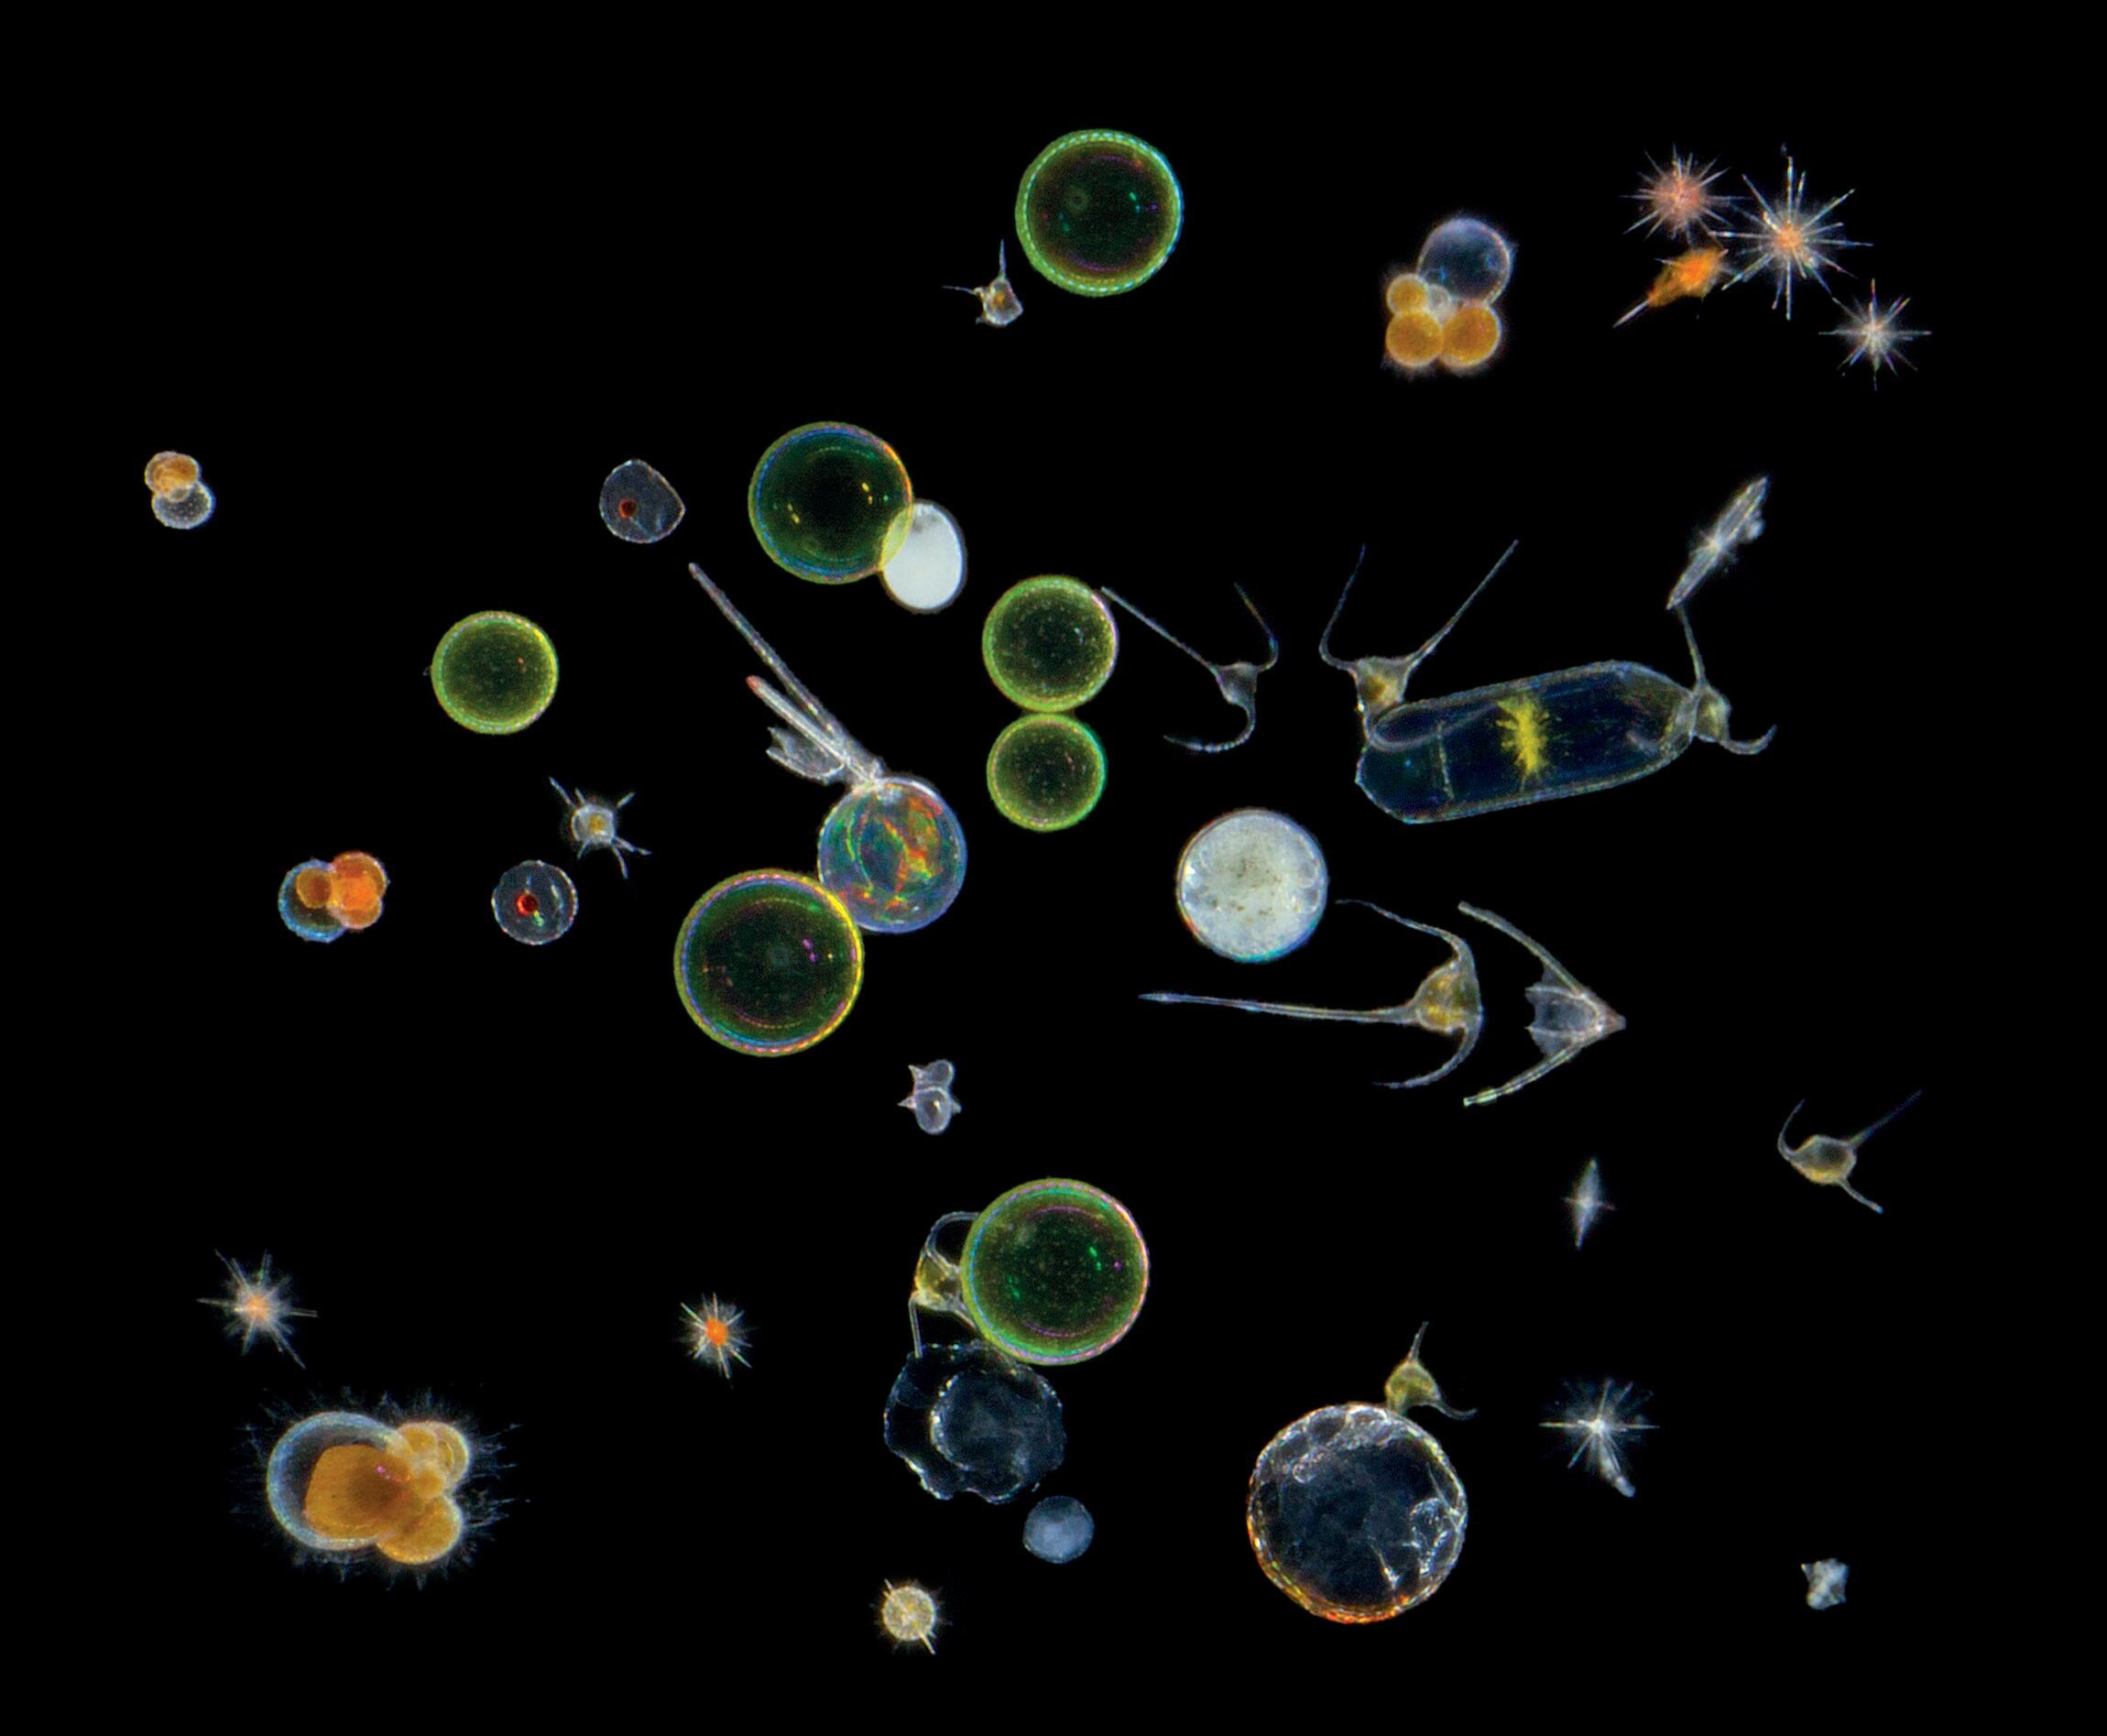 Мелкий зоопланктон